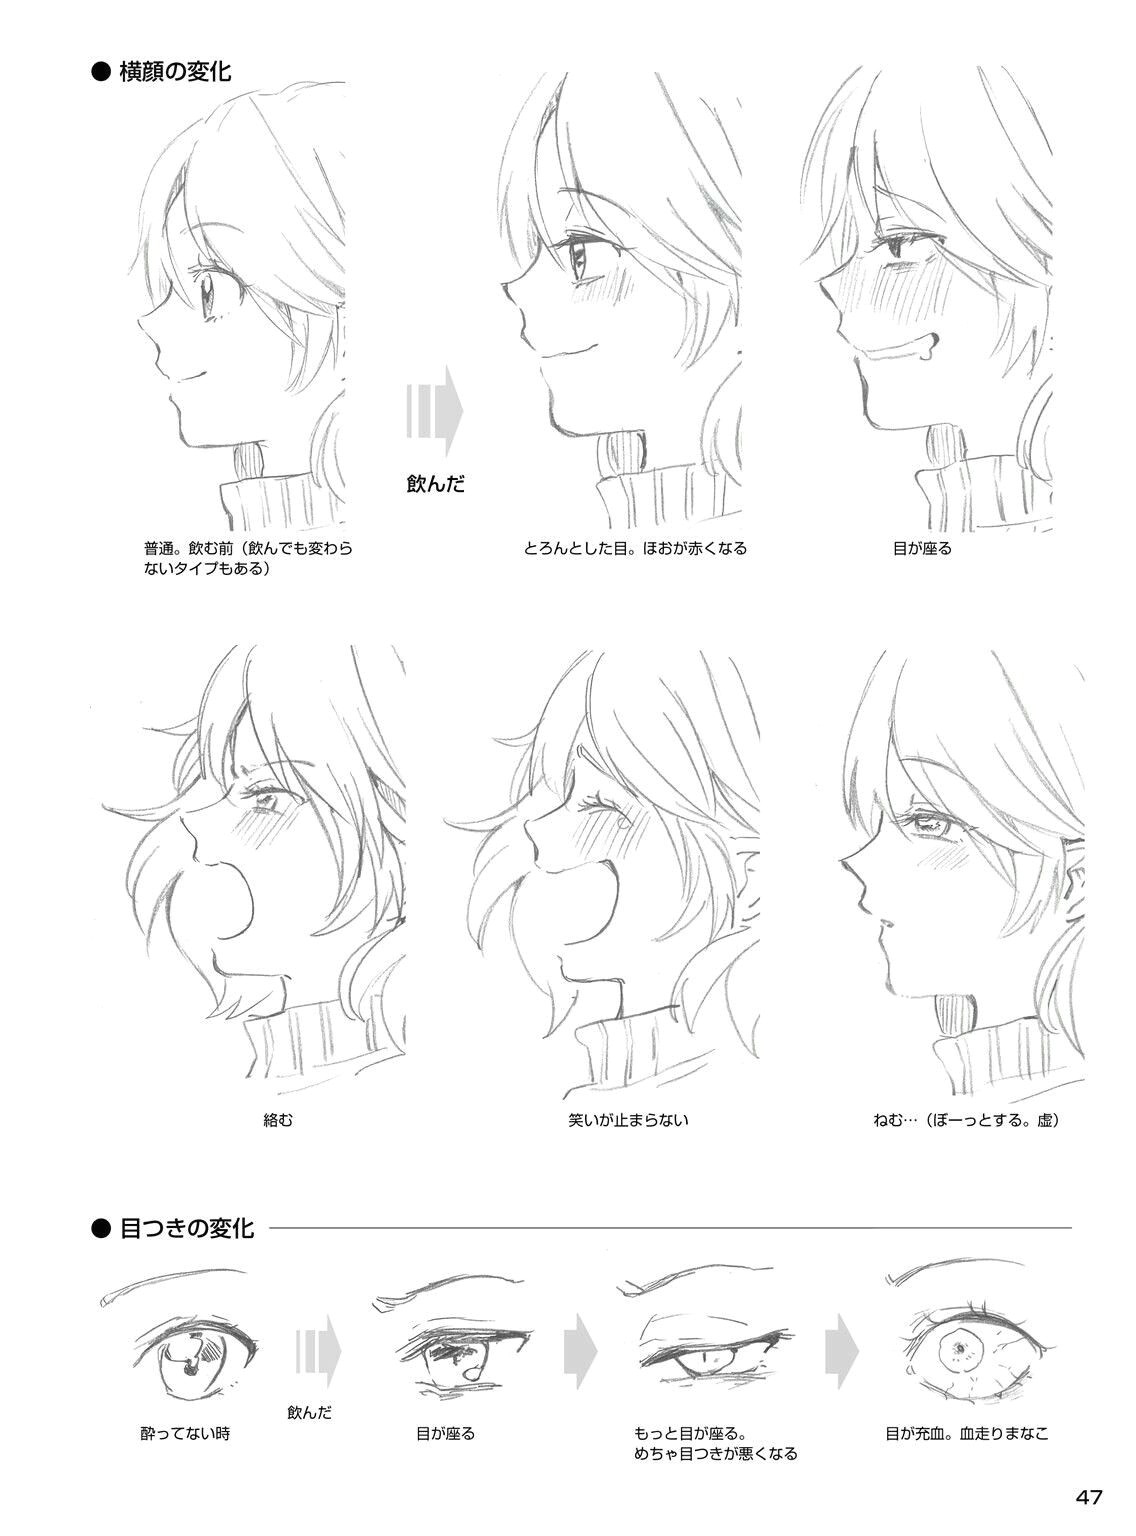 Drawing Anime Help Pin by Kacey On Anime Help Como Dibujar Animes Ca Mo Dibujar